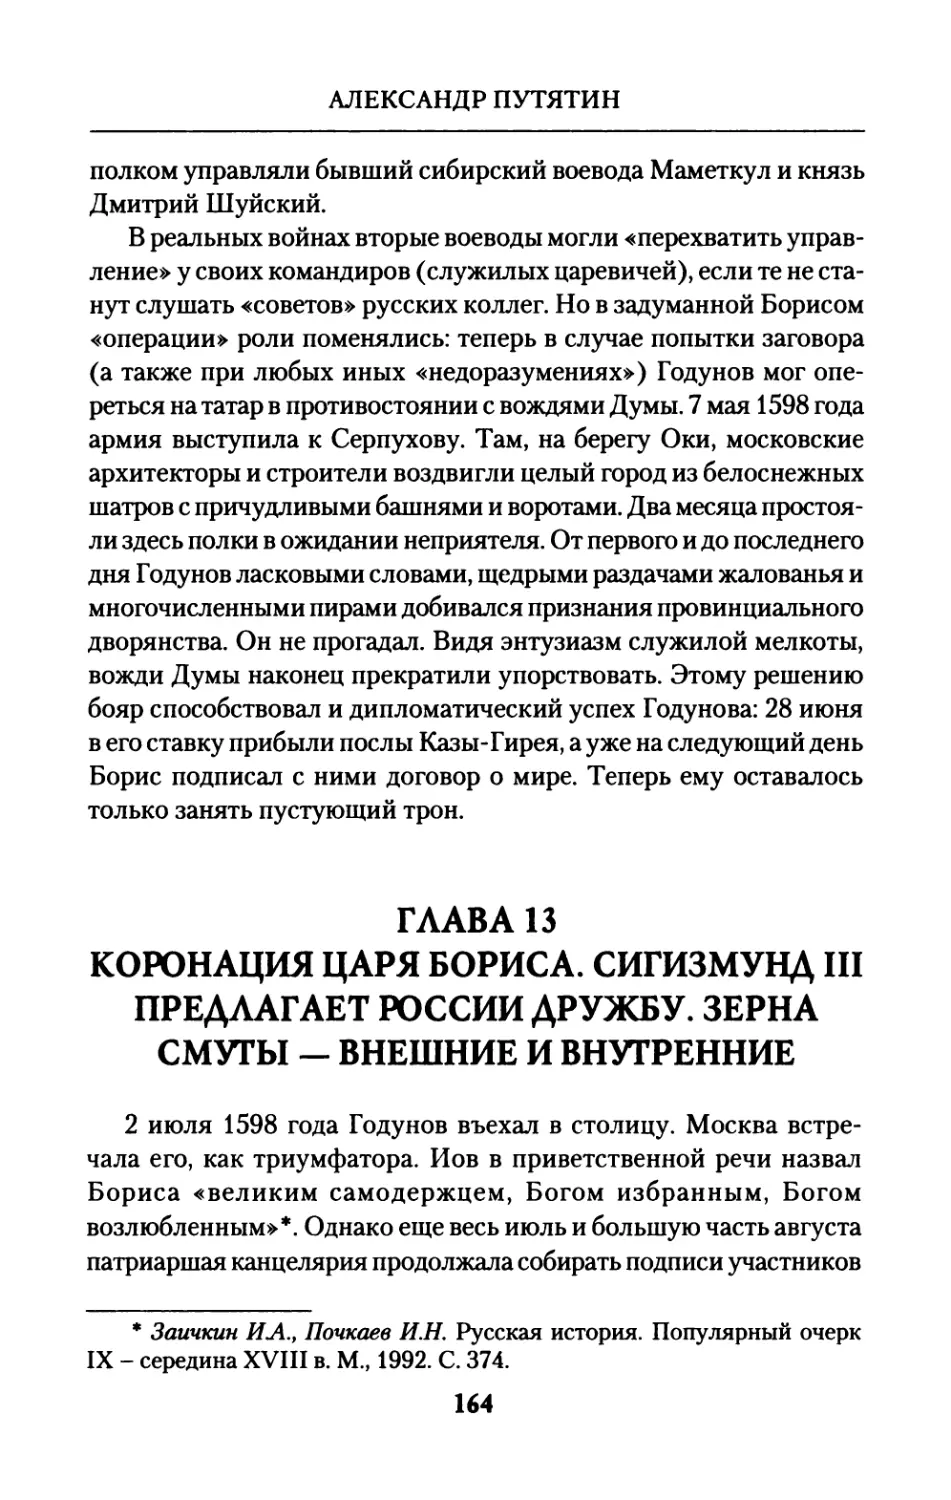 Глава  13.  Коронация  царя  Бориса.  Сигизмунд  III предлагает  России  дружбу.  Зерна  Смуты  —  внешние и  внутренние